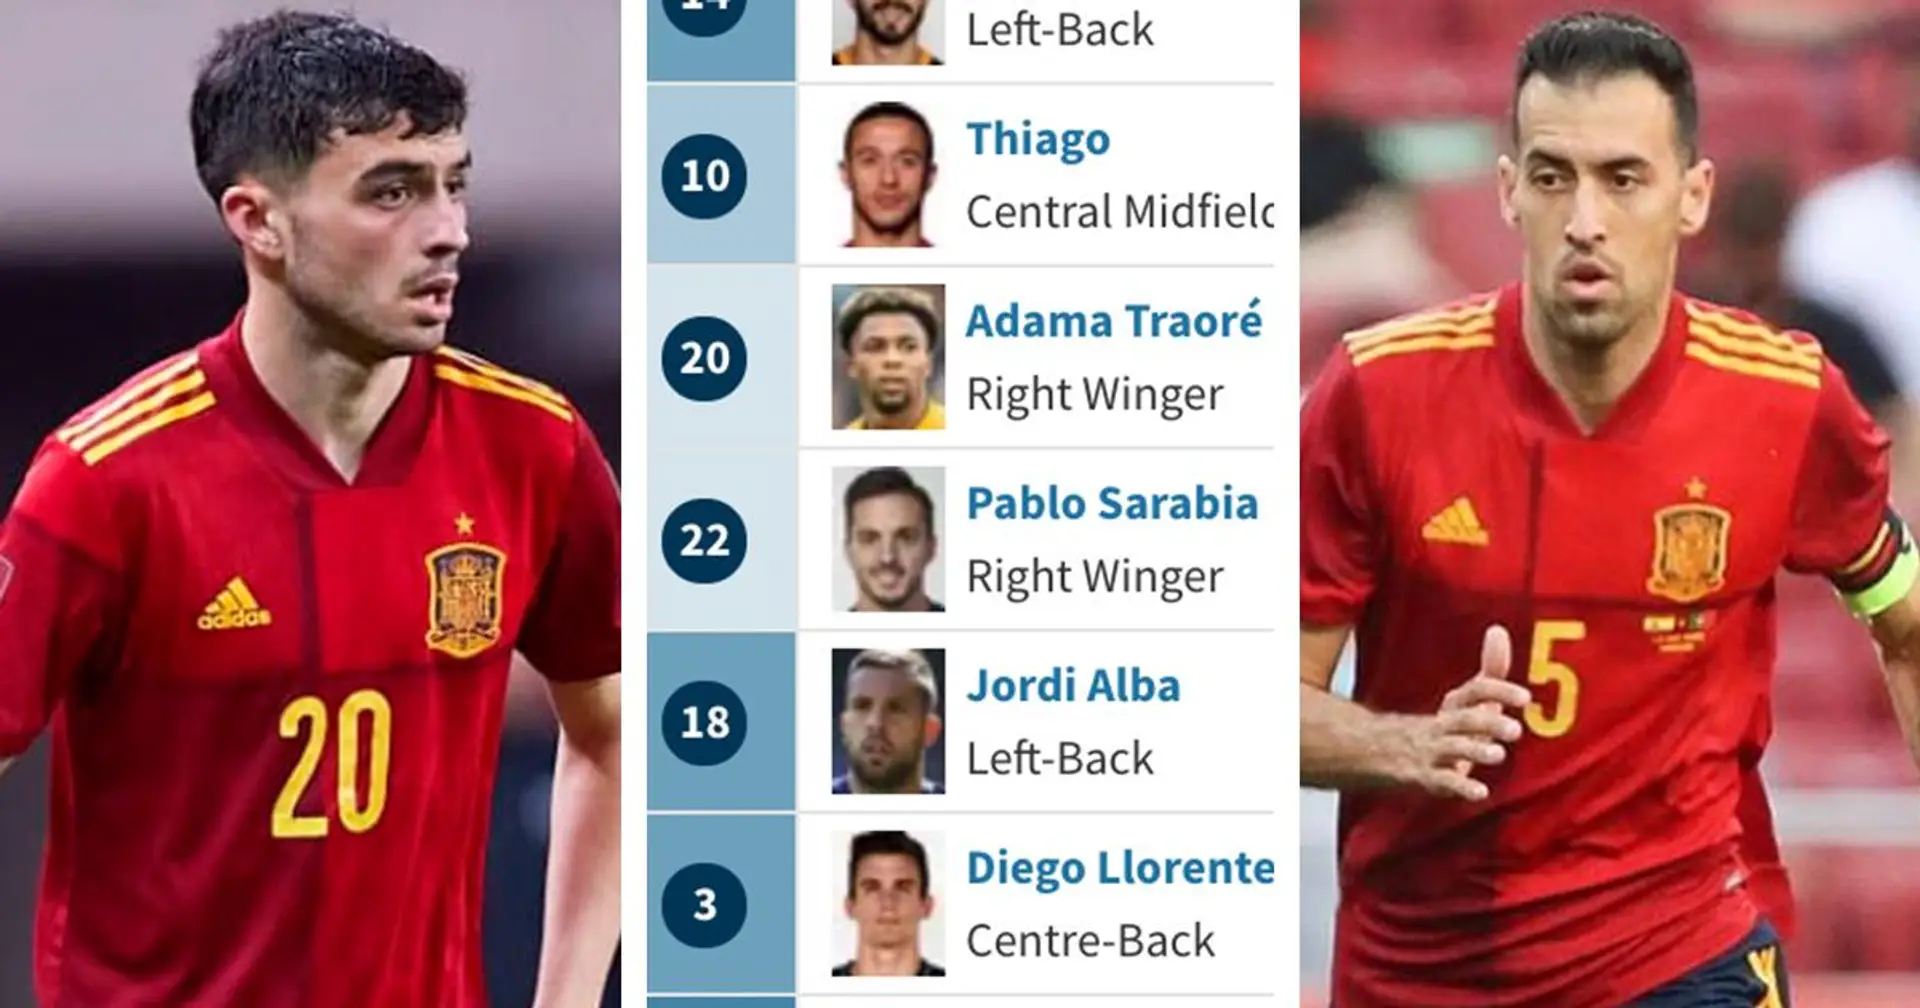 Pedri dans le top 5 des footballeurs les plus chers de l'Espagne pour l'Euro 2020, Busquets en bas de liste